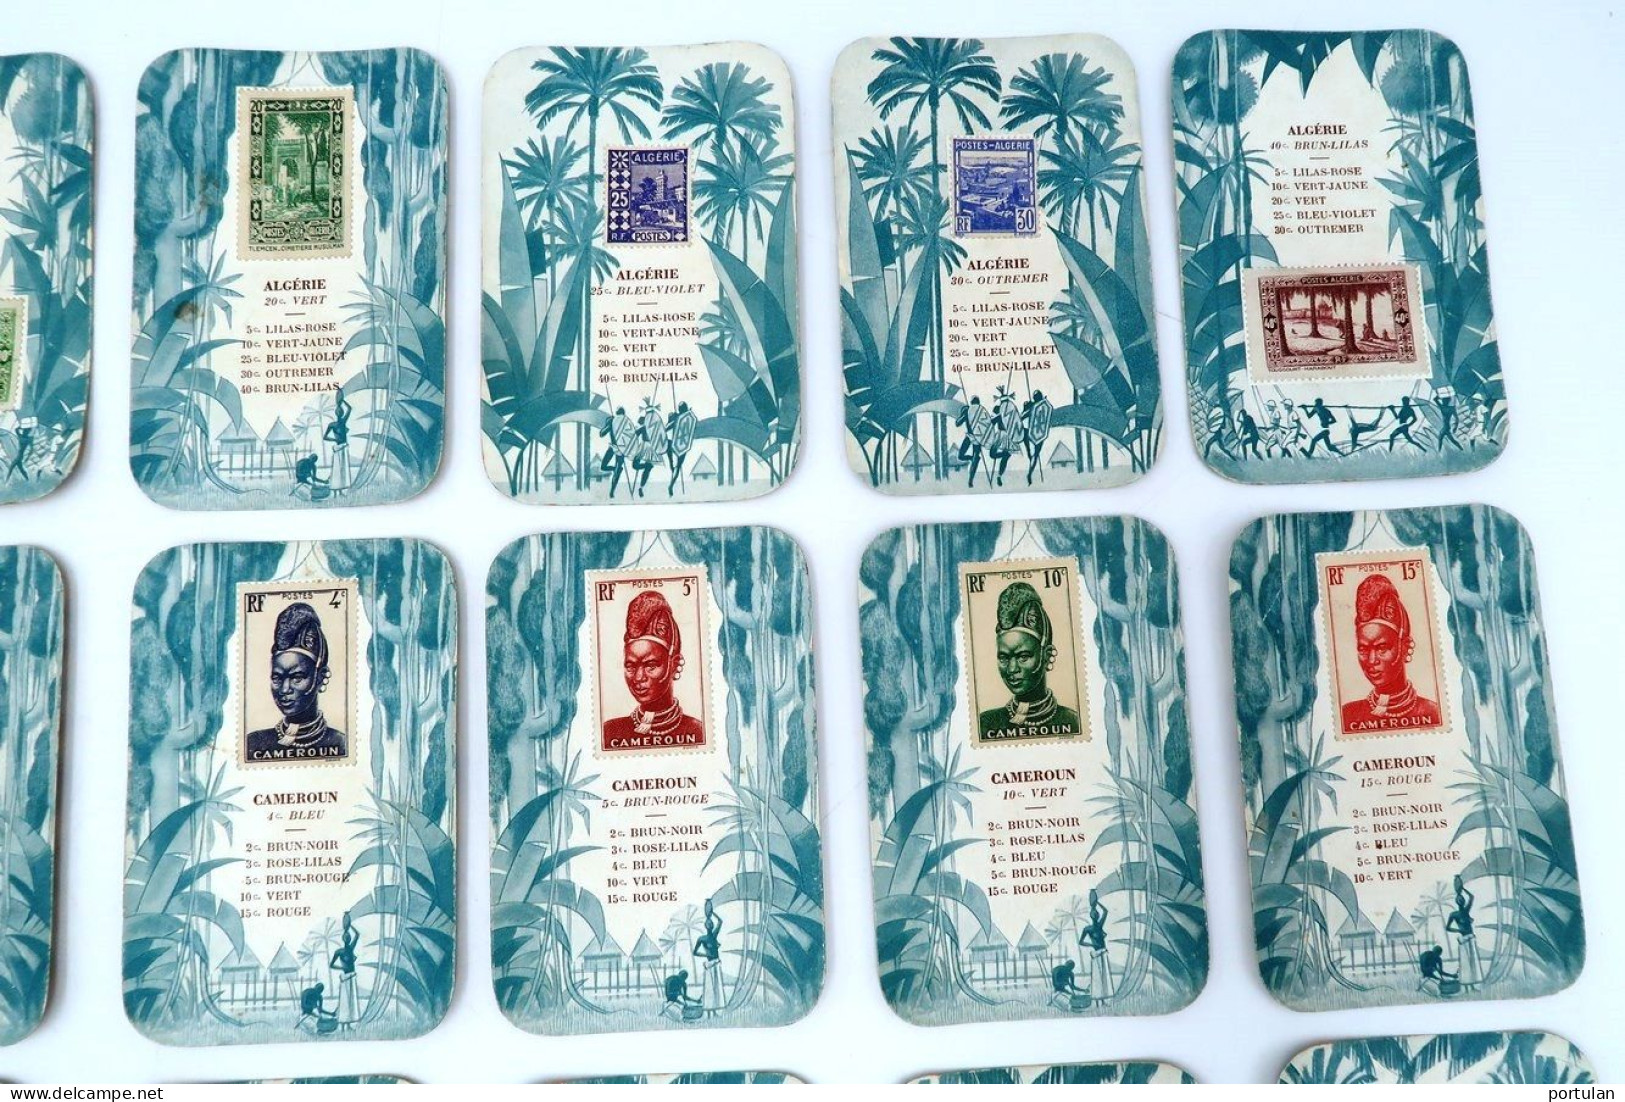 Jeu philatélique 1938 timbres Guinée Madagascar Réunion Côte d'Ivoire Algérie Cameroun Mauritanie Dahomey